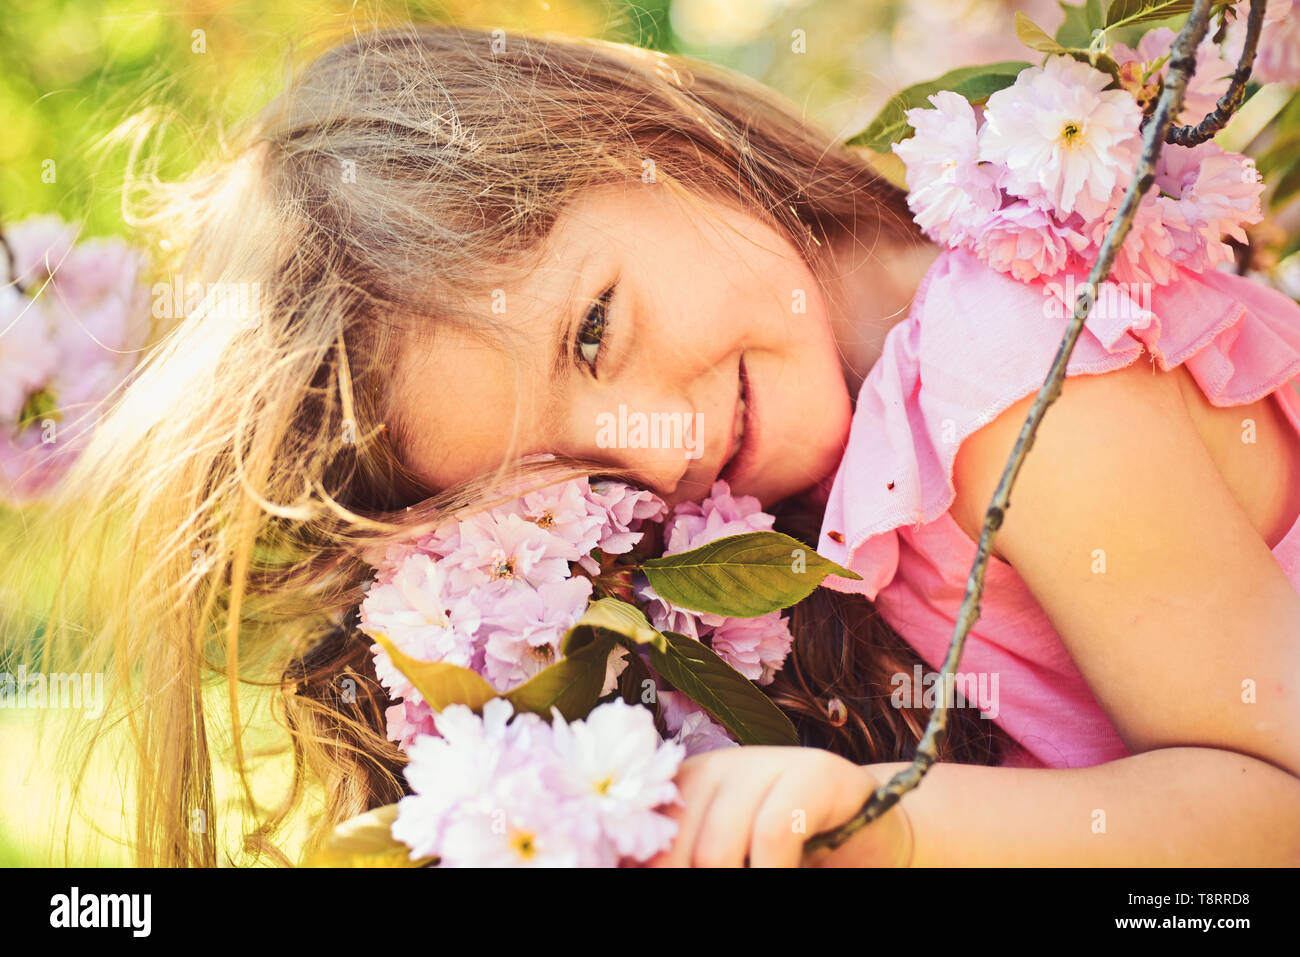 Kleines Kind. Natürliche Schönheit. Tag der Kinder. Sommer Mädchen Mode. Glückliche Kindheit. Gesichts- und Hautpflege. Allergie zu Blumen. Frühling. Wettervorhersage Stockfoto